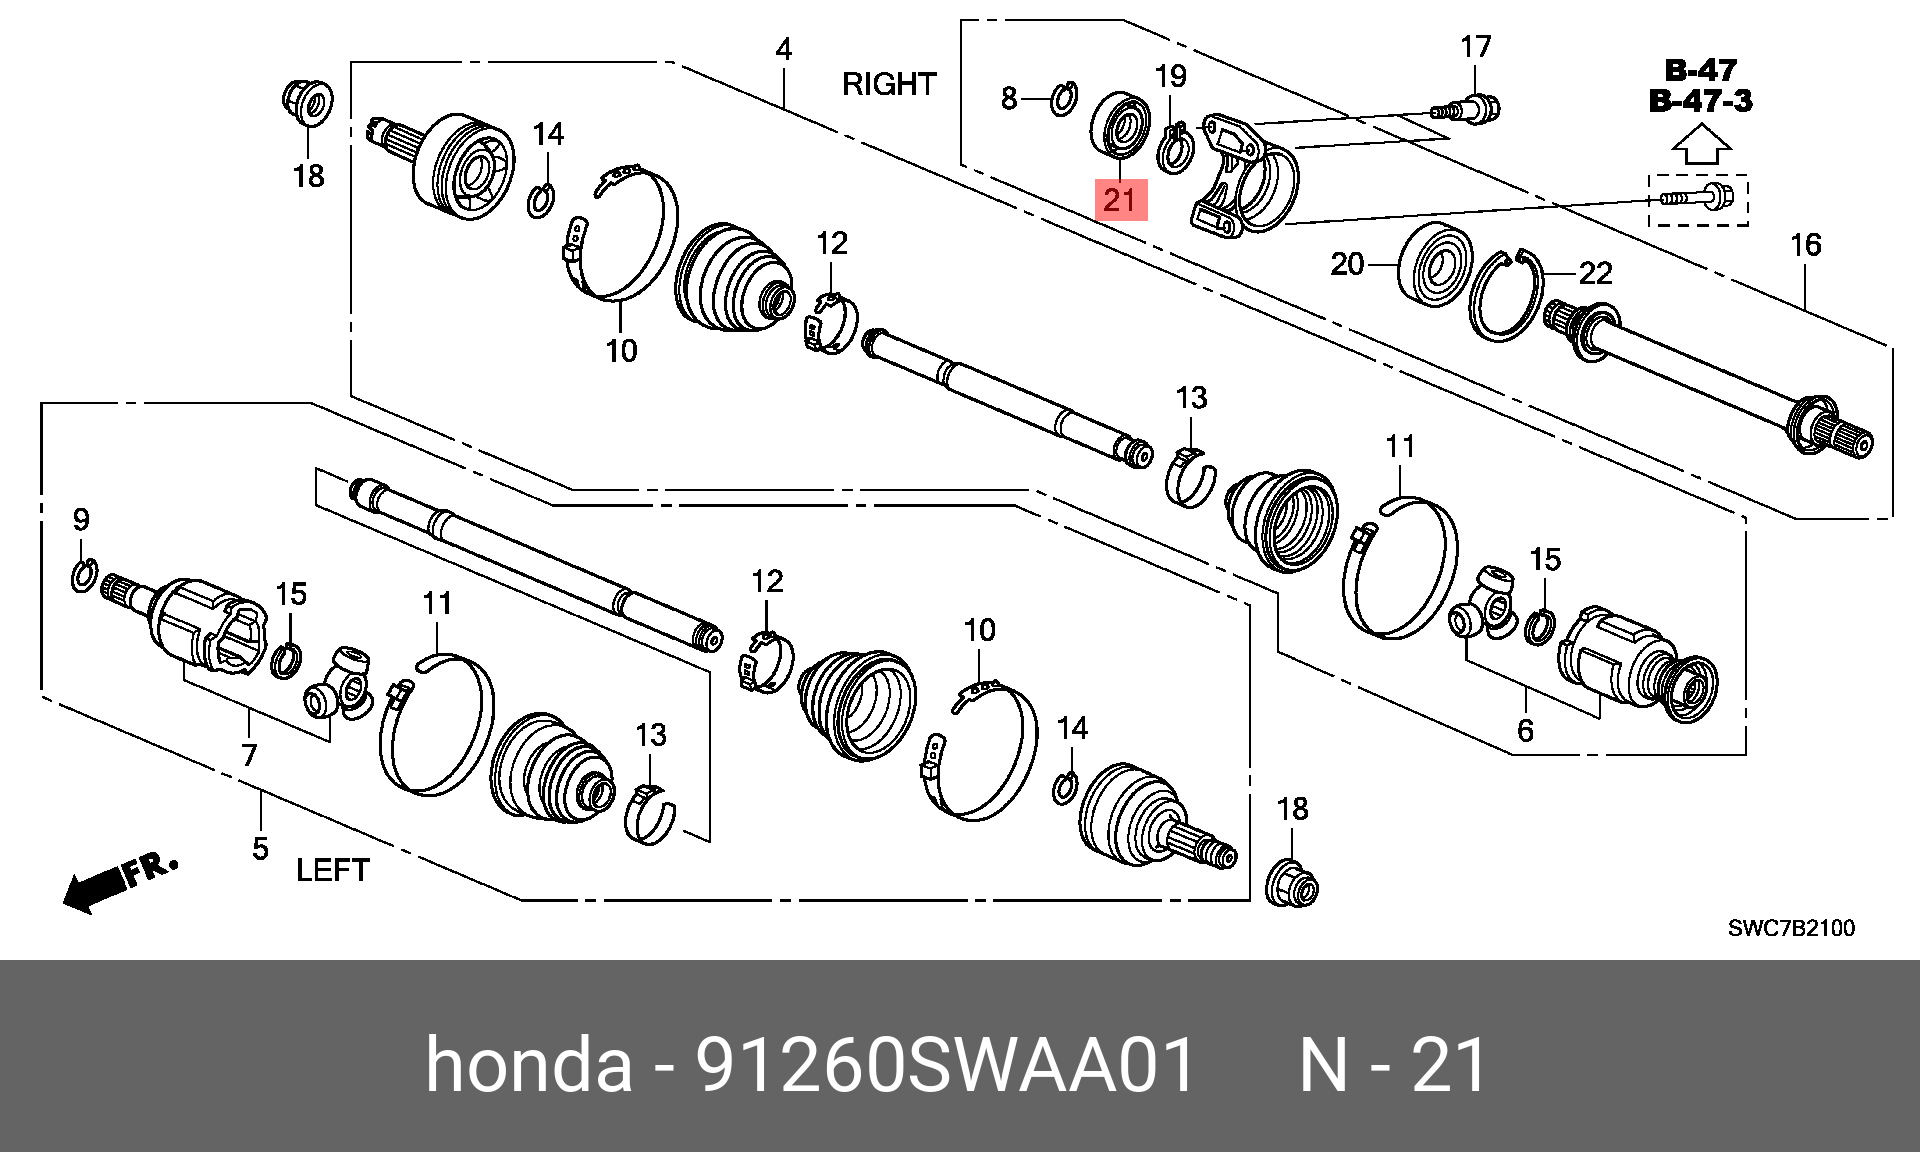 Хонда CR V rd1 привод передний левый схема. Сальник привода Хонда ЦРВ 2008. 91260-SWA-a01. Подшипник привода промежуточный Хонда. Honda передний привод